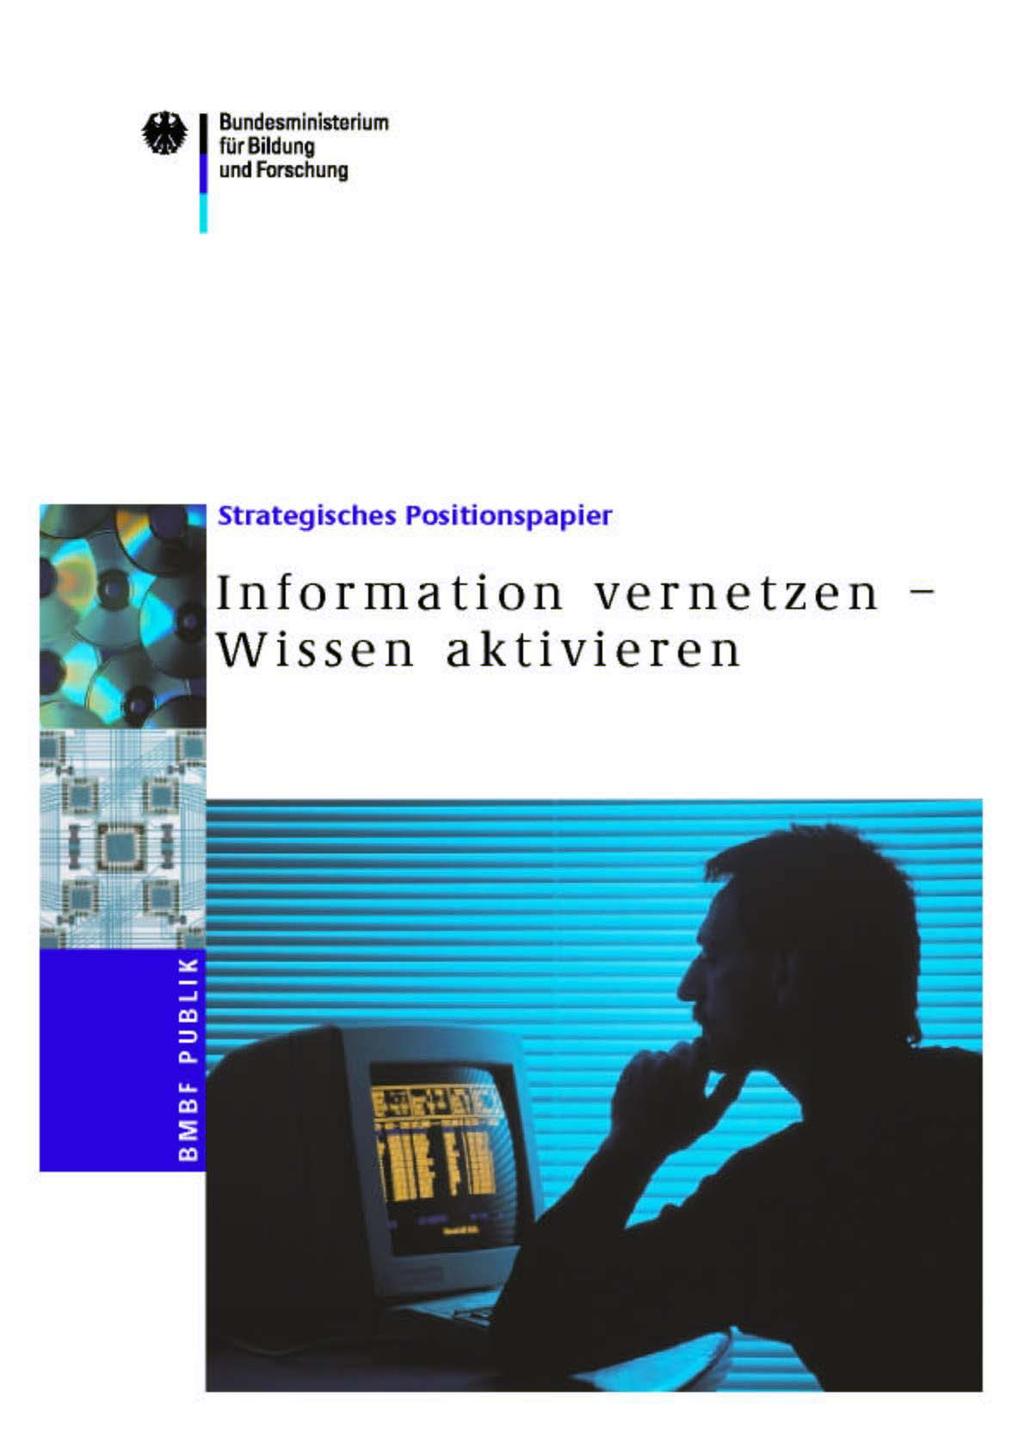 Wissenschaftsrat (2001): Empfehlungen zur digitalen Informationsversorgung durch Hochschulbibliotheken bmb+f (2001): Nutzung elektronischer